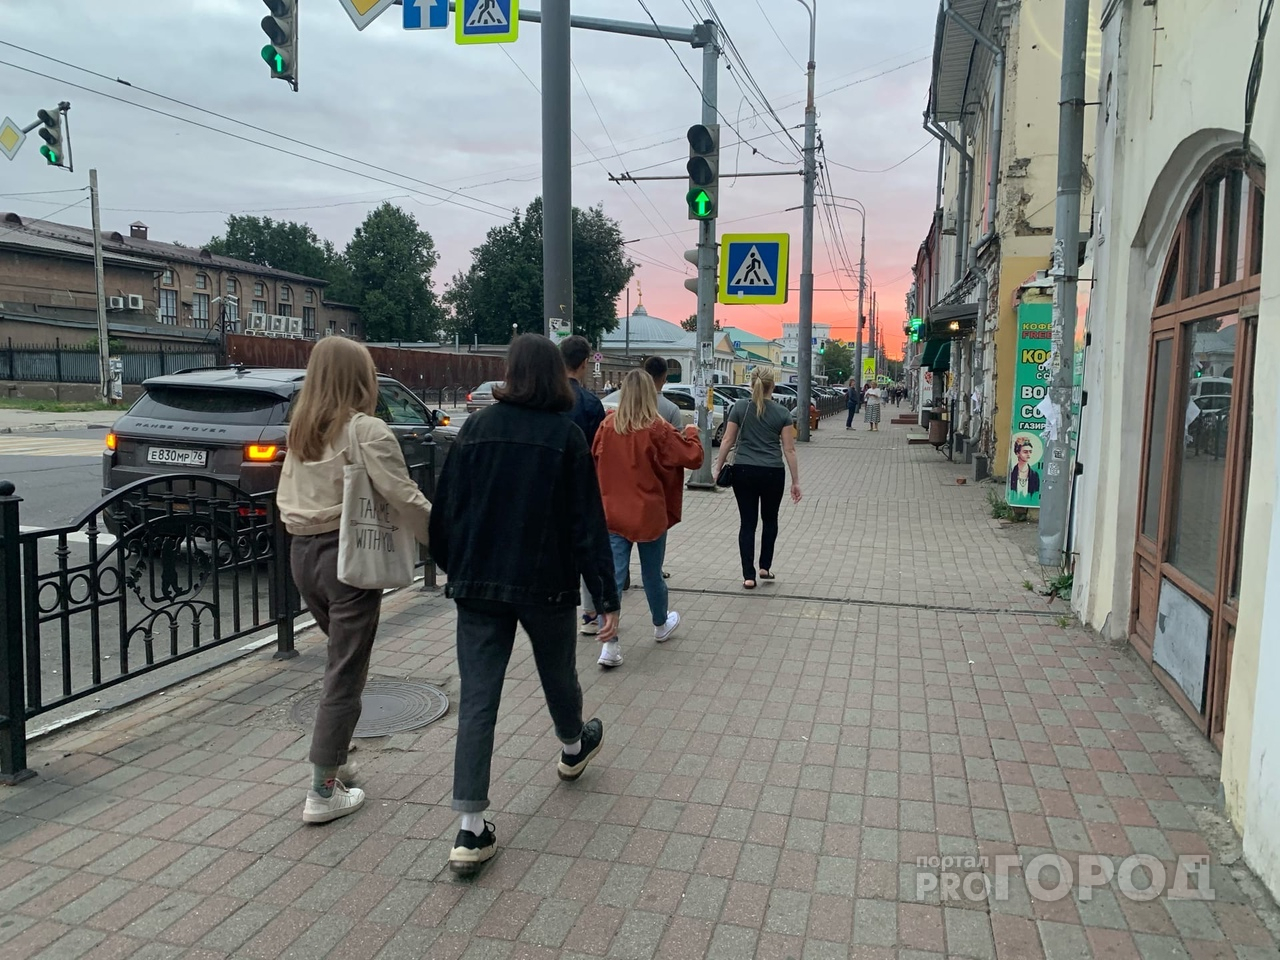 Придется объезжать: в центре Ярославля перекроют движение для водителей авто